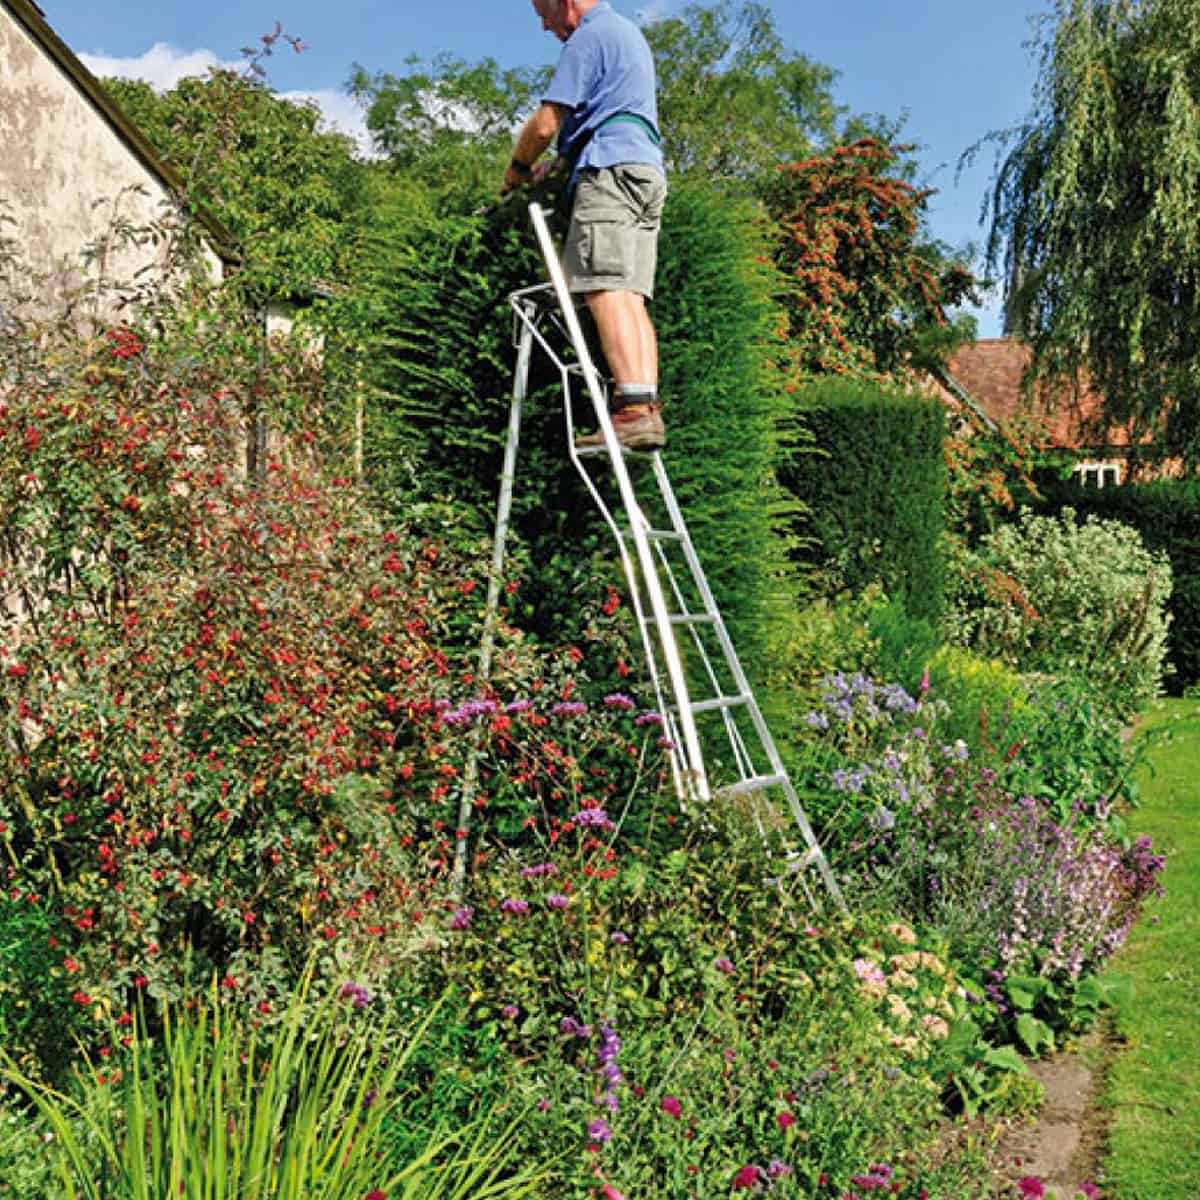 Comment choisir une echelle d exterieur pour les travaux de jardinage ? - Quelles sont les conditions de securite a respecter pour travailler sur une echelle ? 